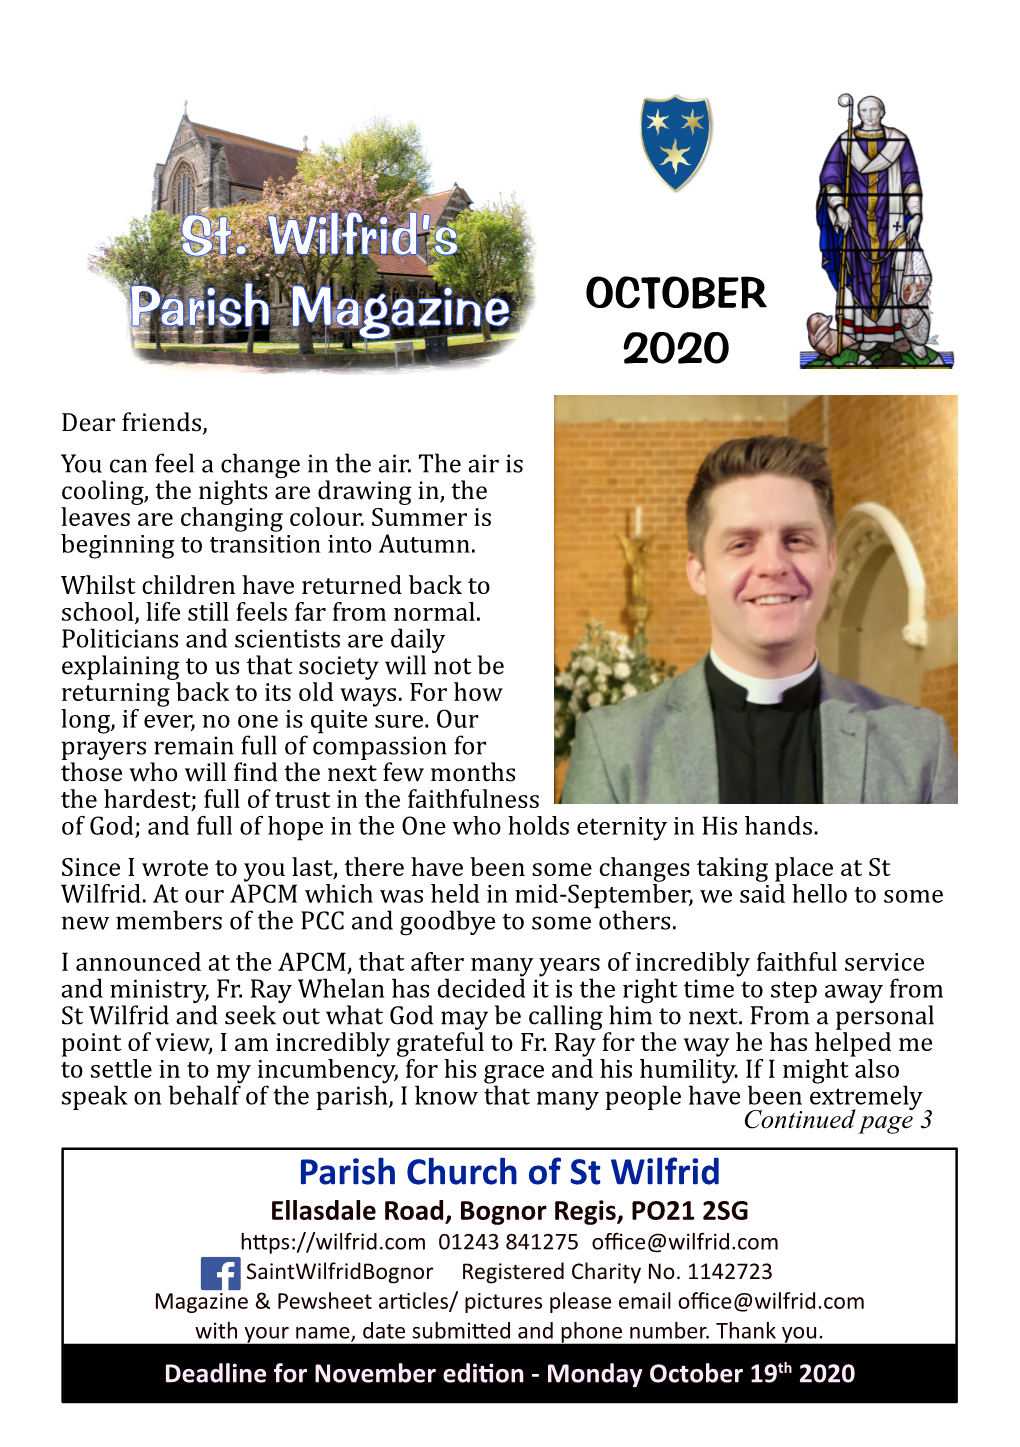 St. Wilfrid's Parish Magazine